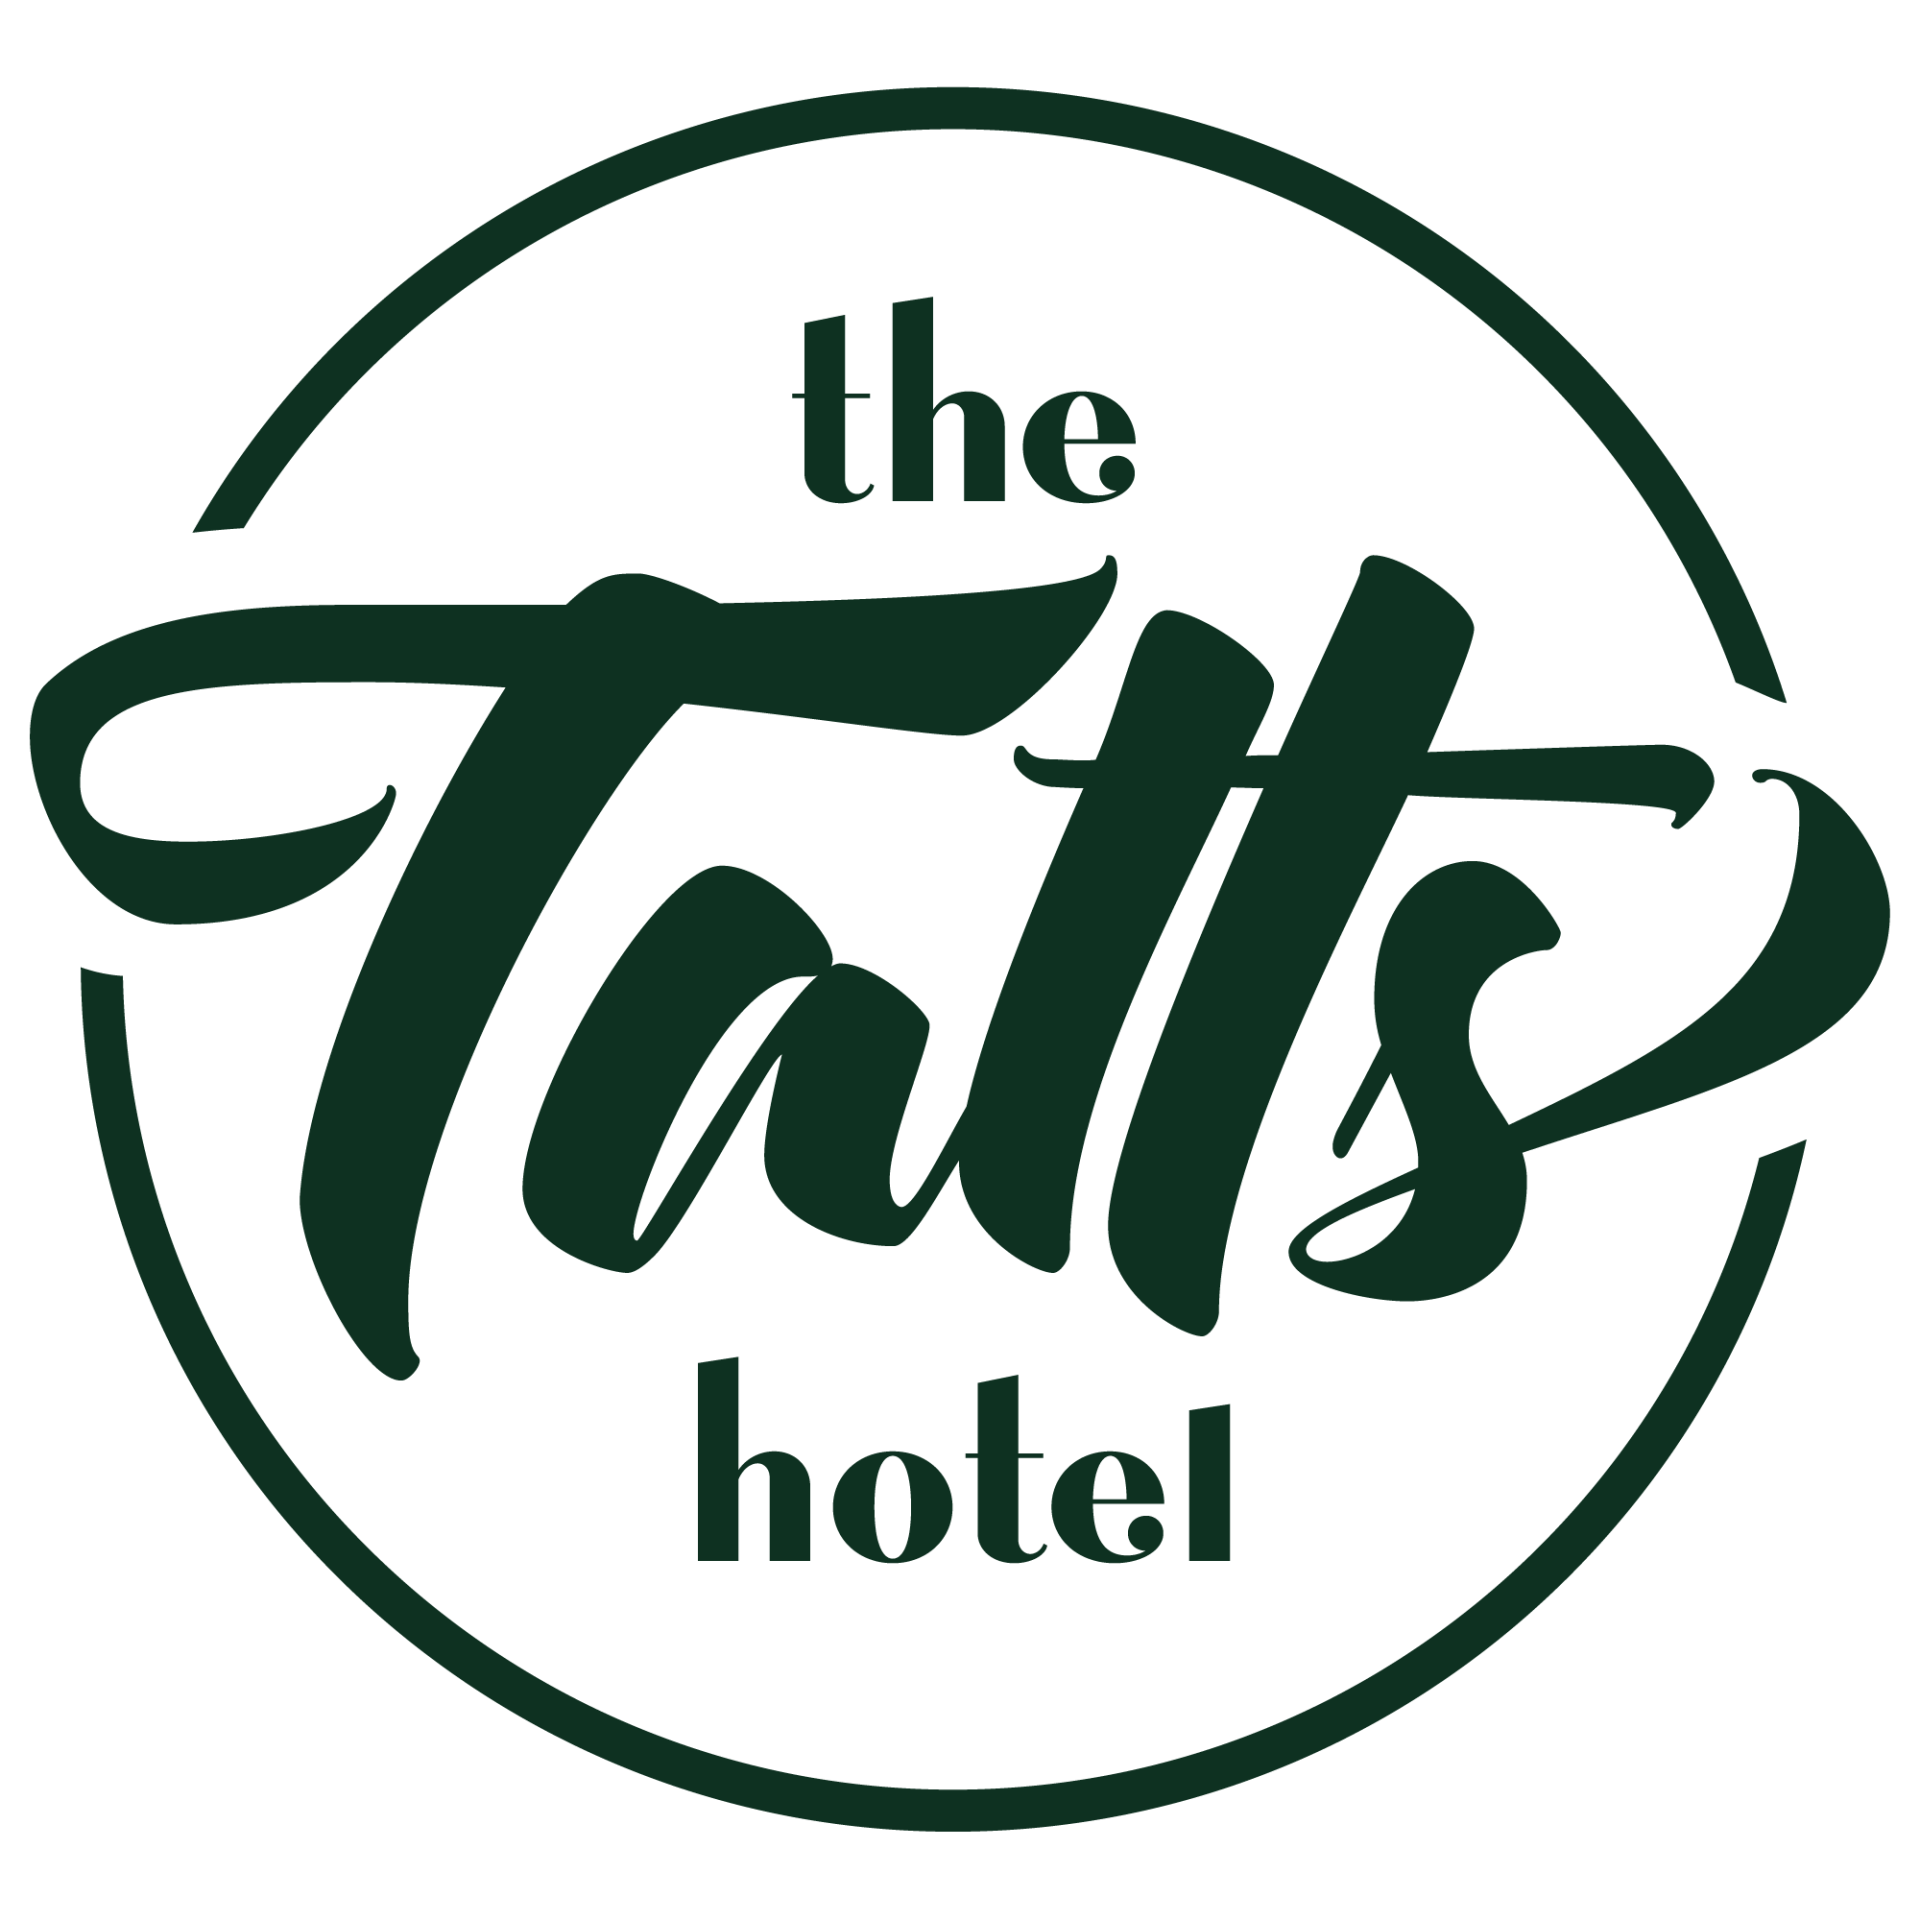 Tatts Hotel Toowoomba Logo